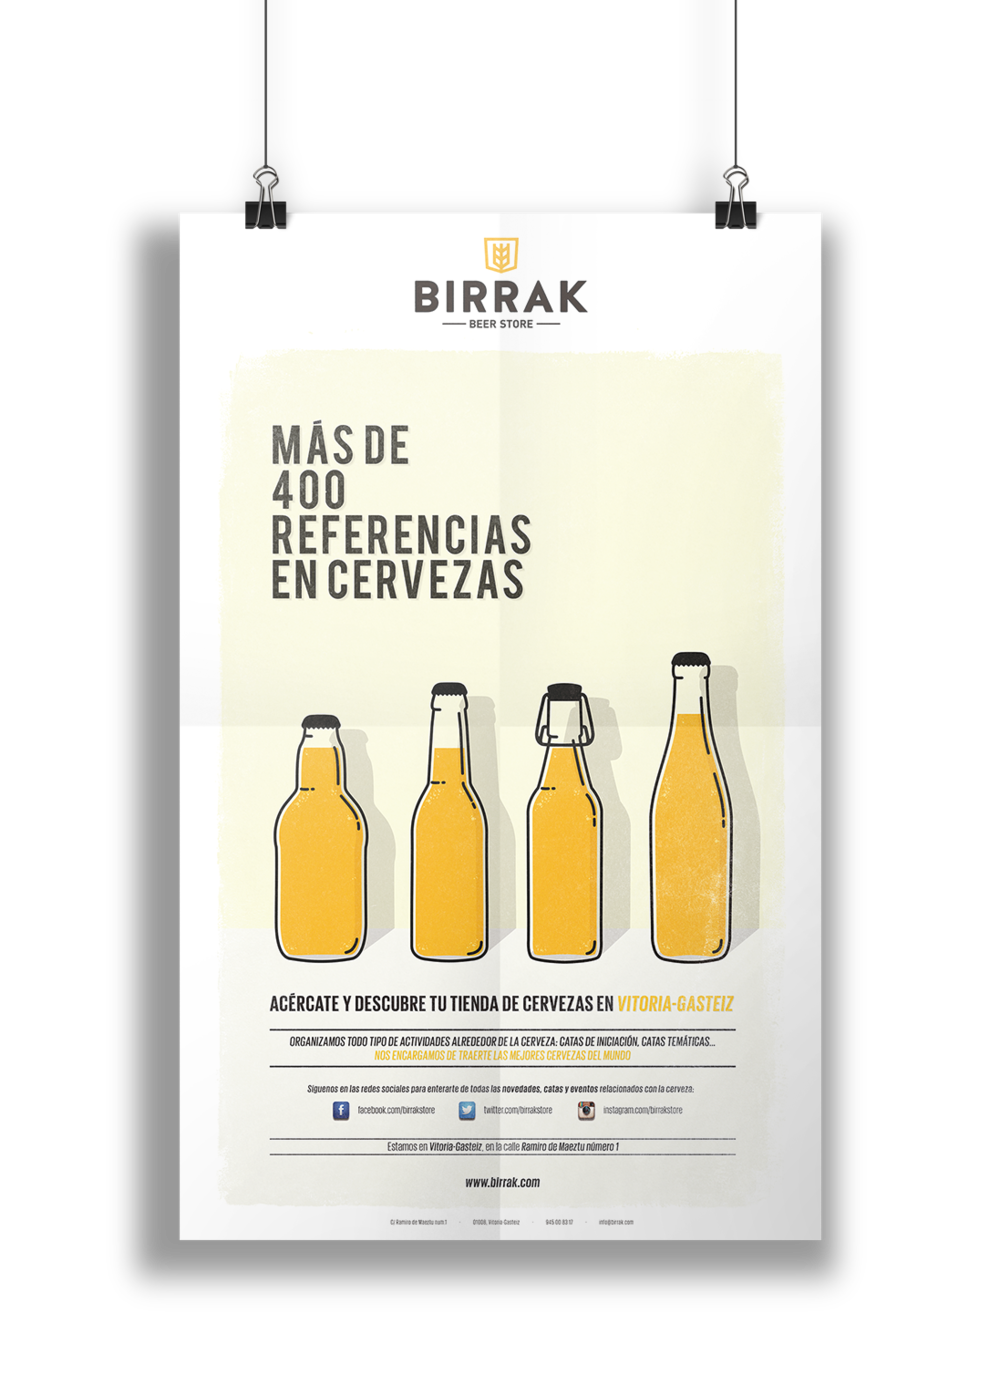 Birrak啤酒店品牌形象设计